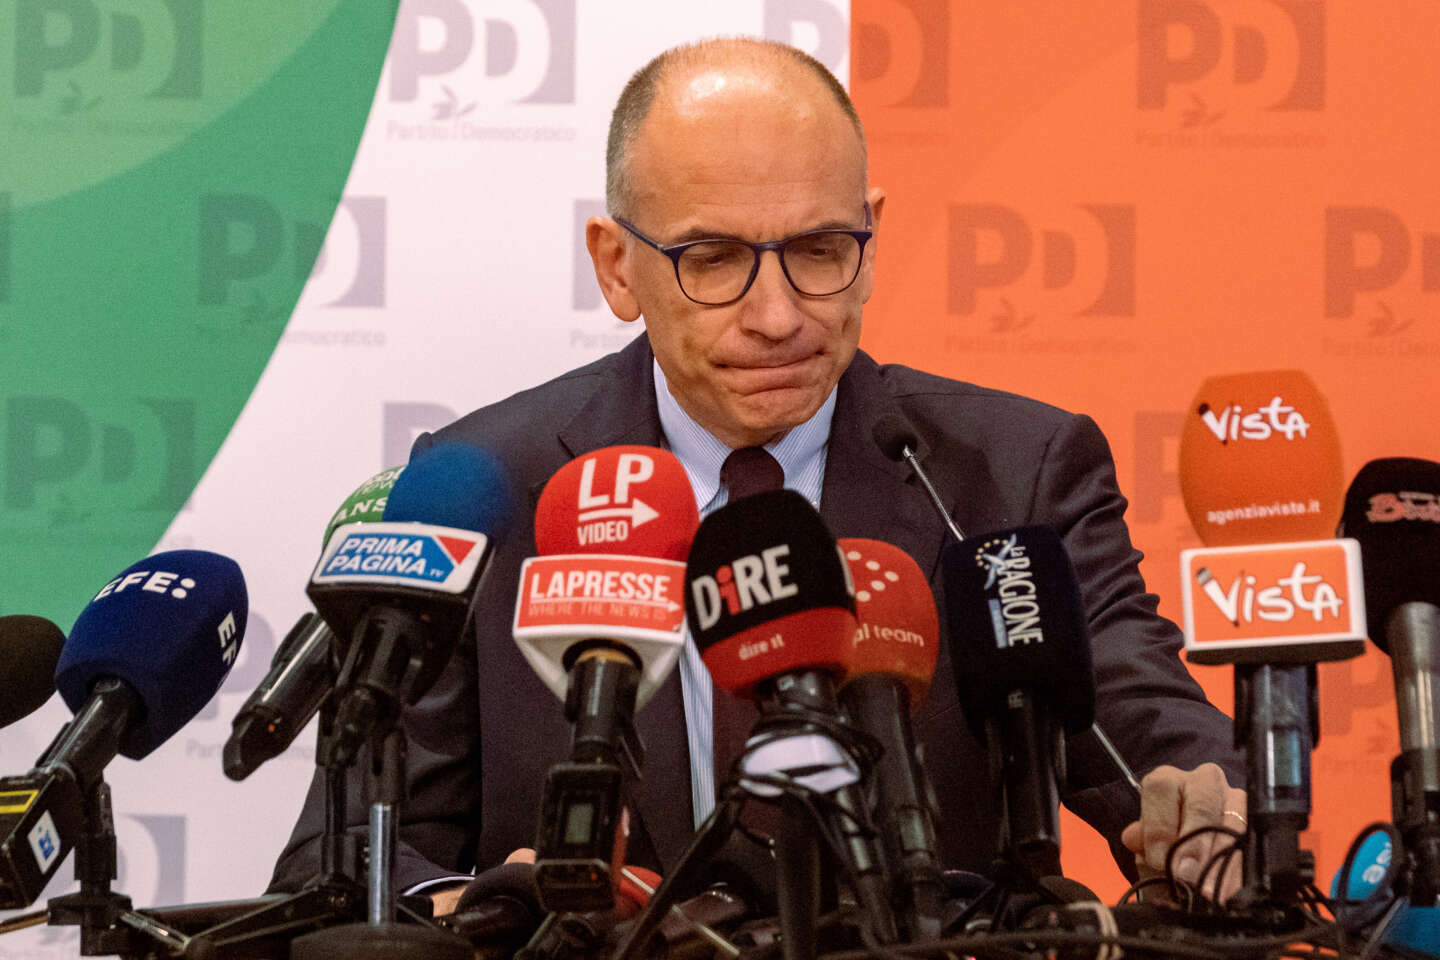 Dopo la sconfitta shock alla sinistra dopo le elezioni in Italia, il Pd è in crisi